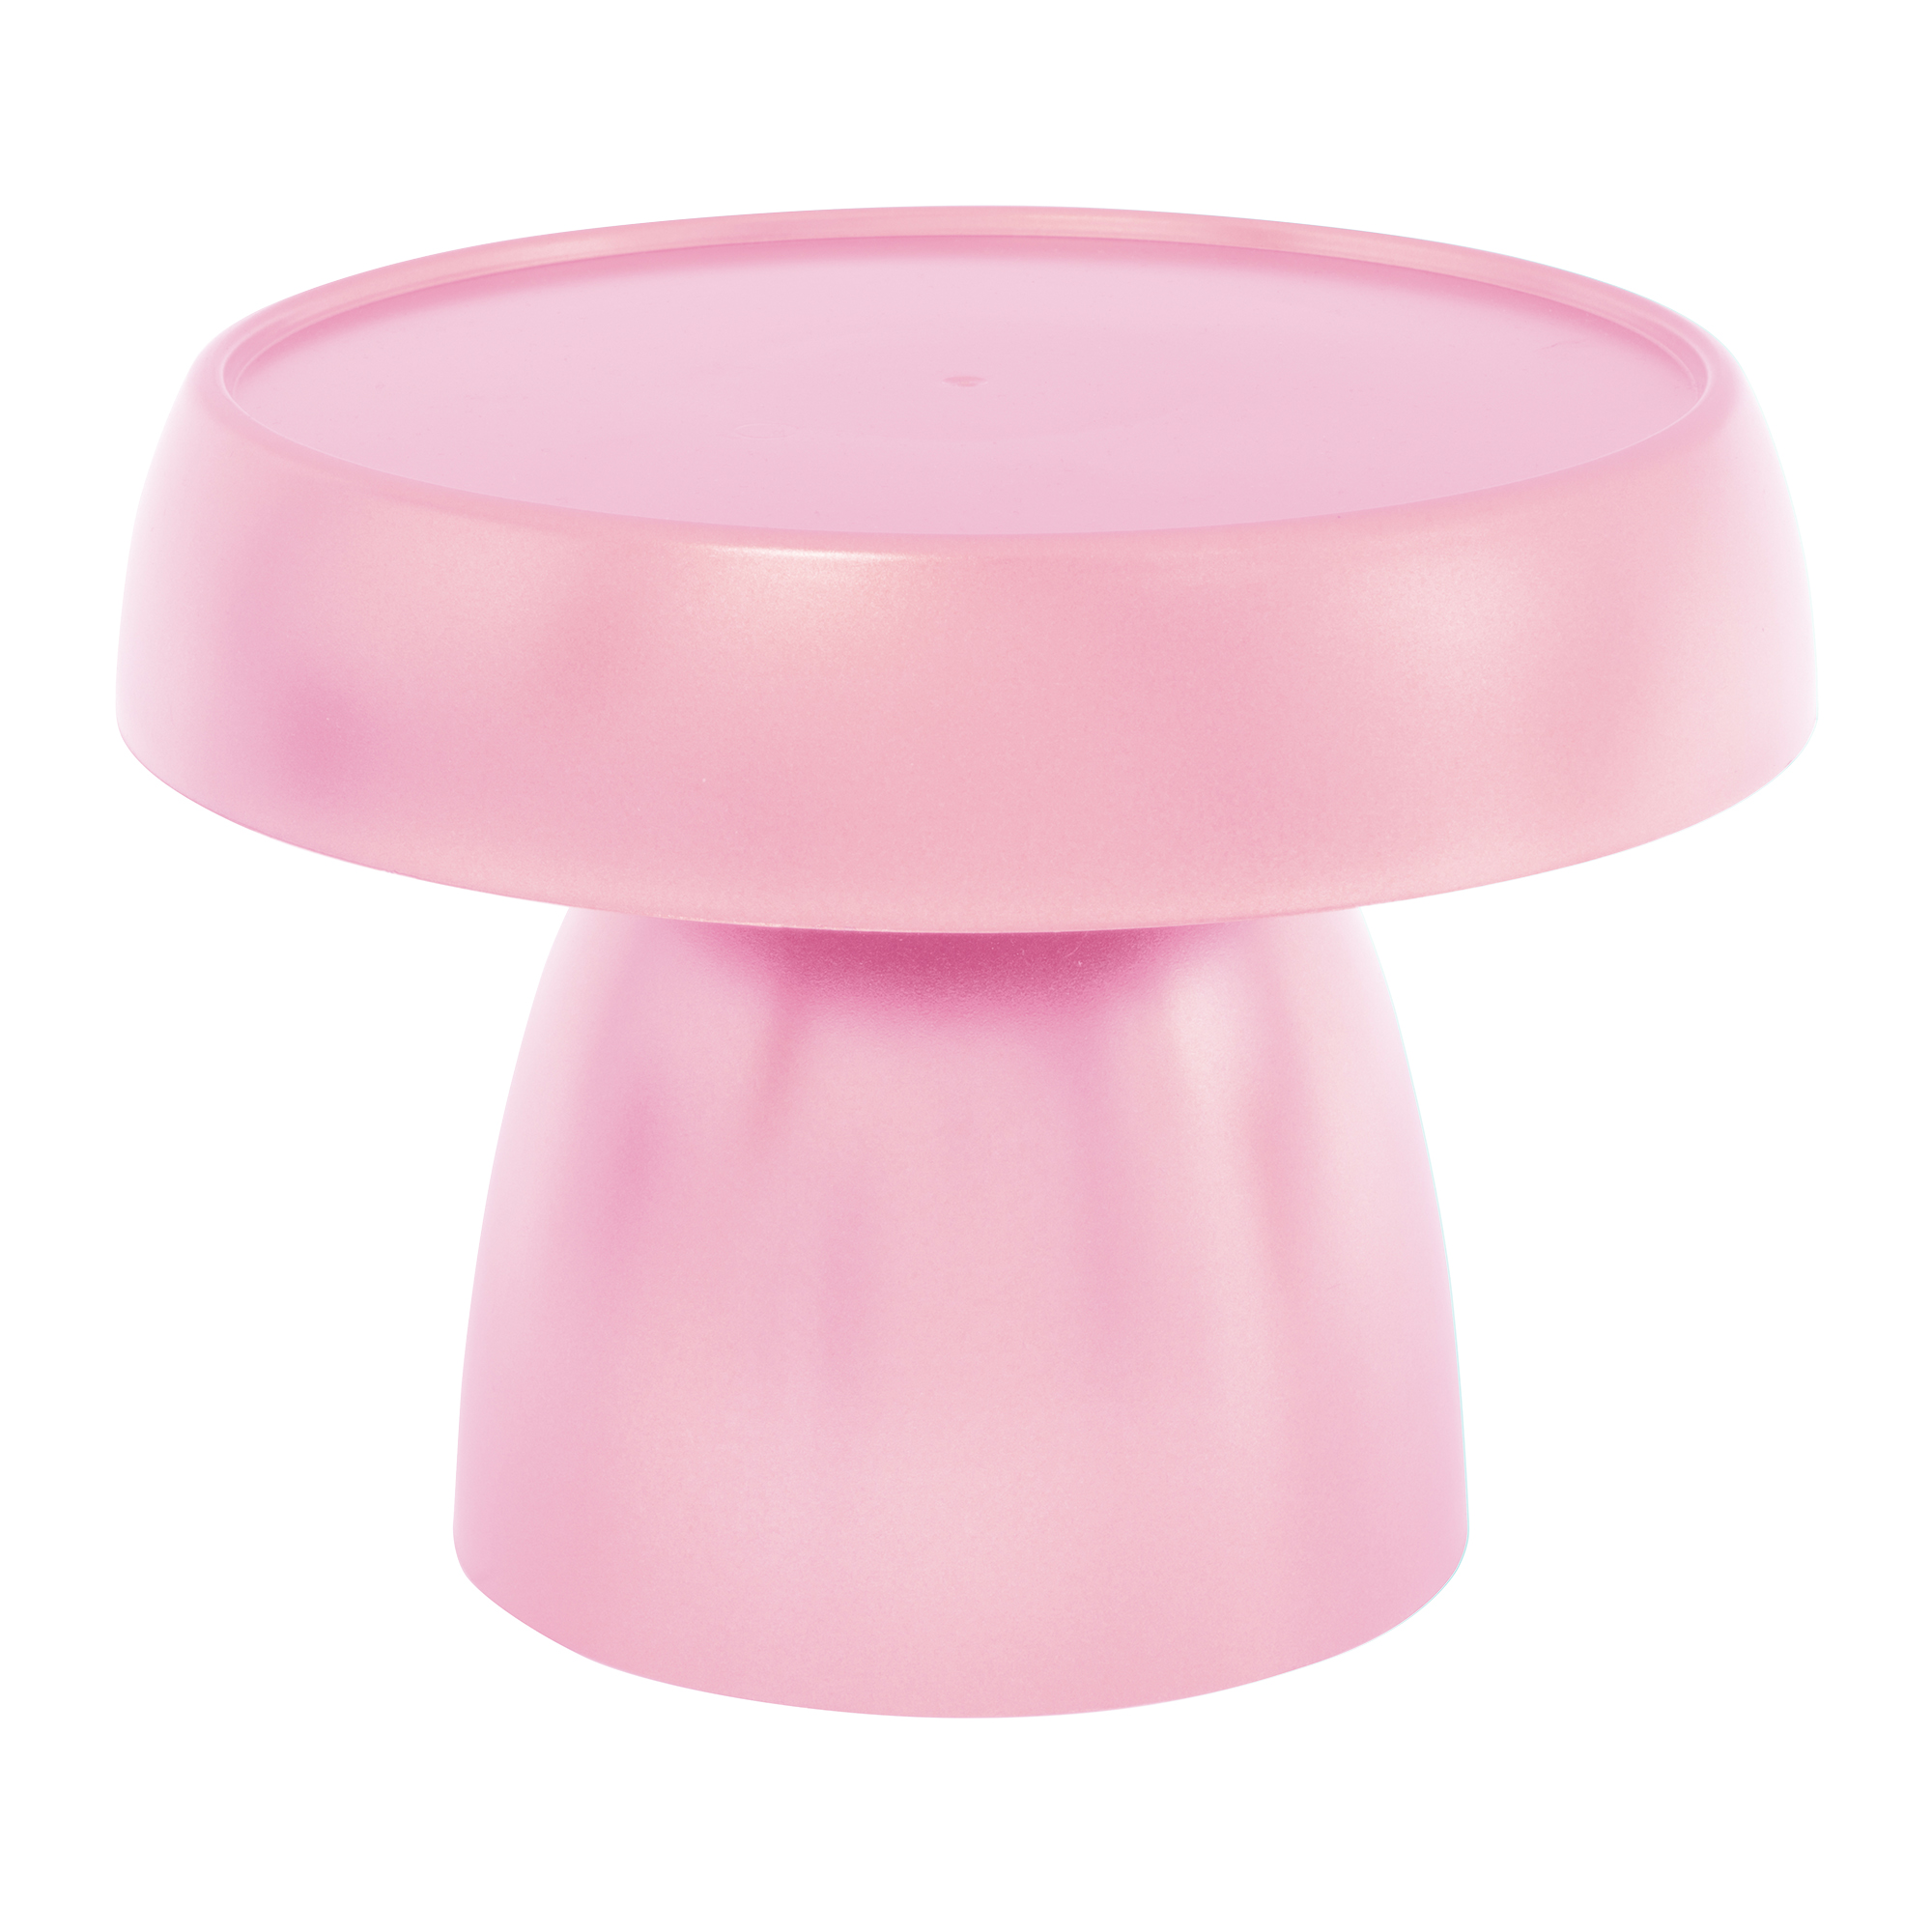 Plastic Mushroom Treat Stand 8" - Pink